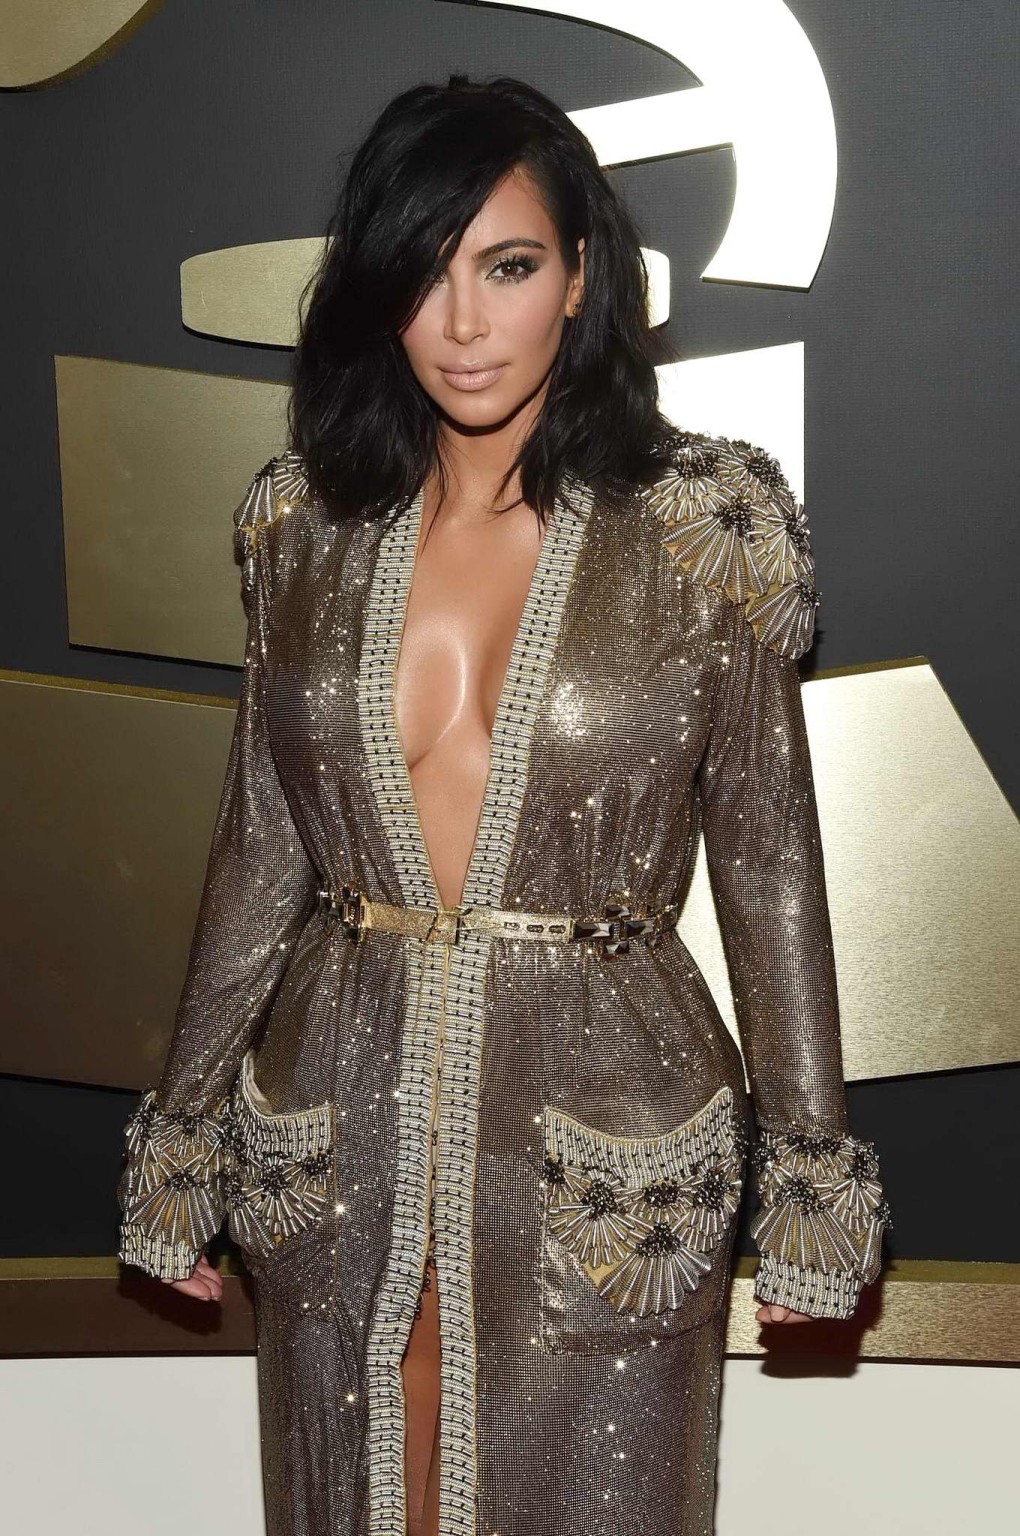 Kim Kardashian braless and pantyless in revealing golden smock arriving at 57th  #75173166